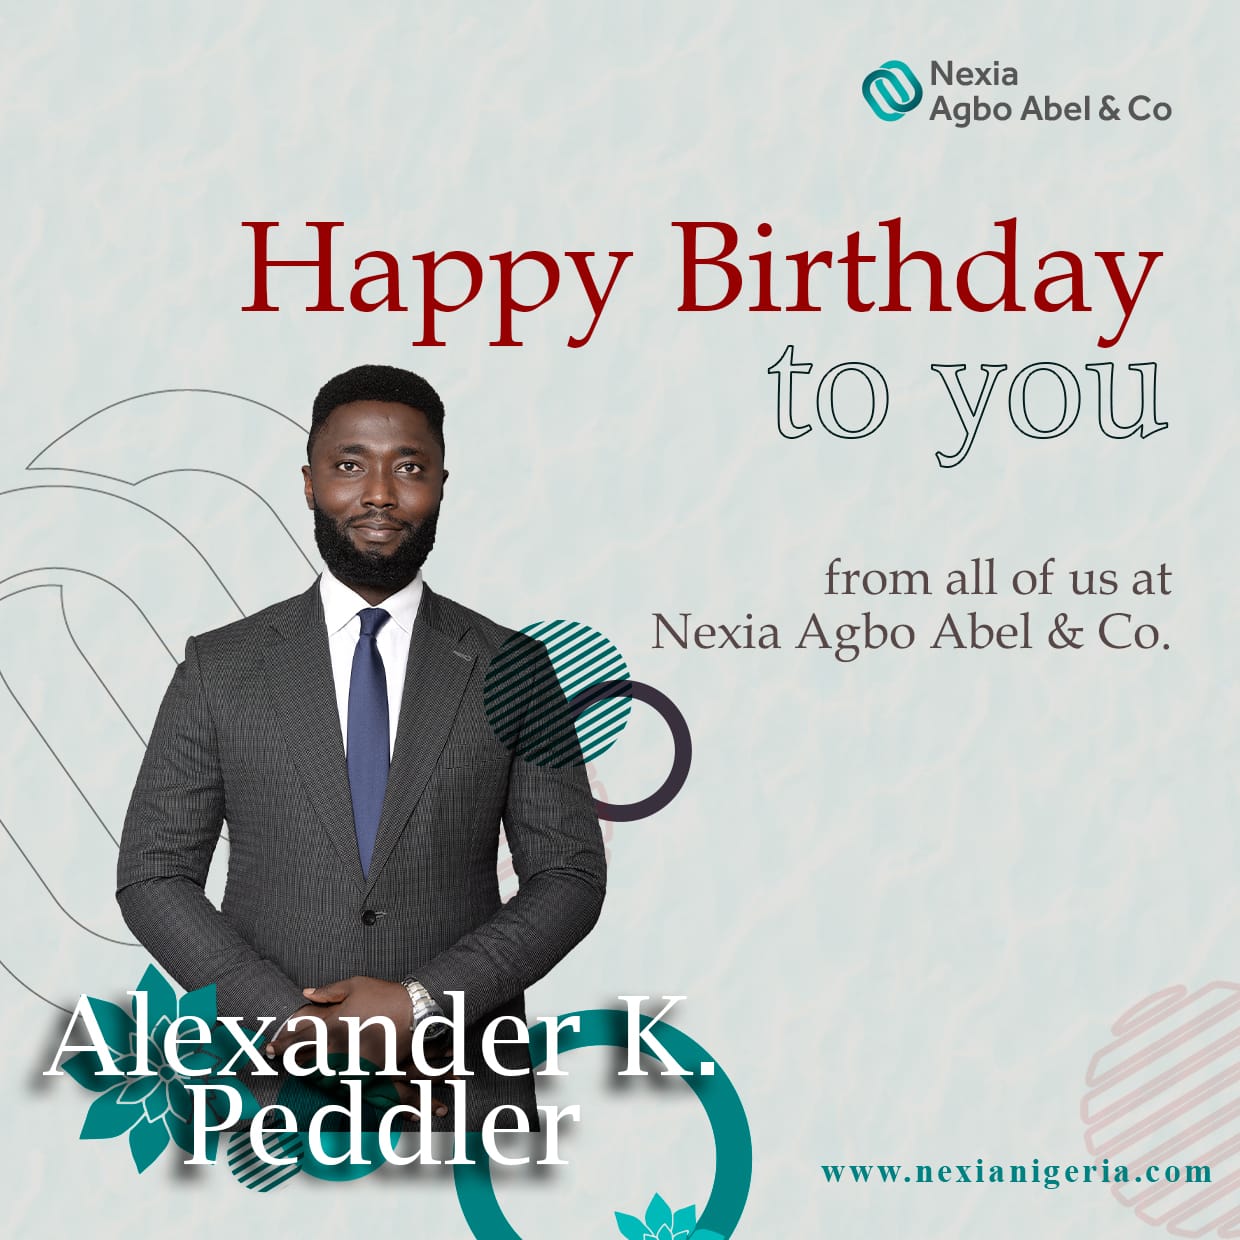 Happy Birthday Alexander K. Peddler!